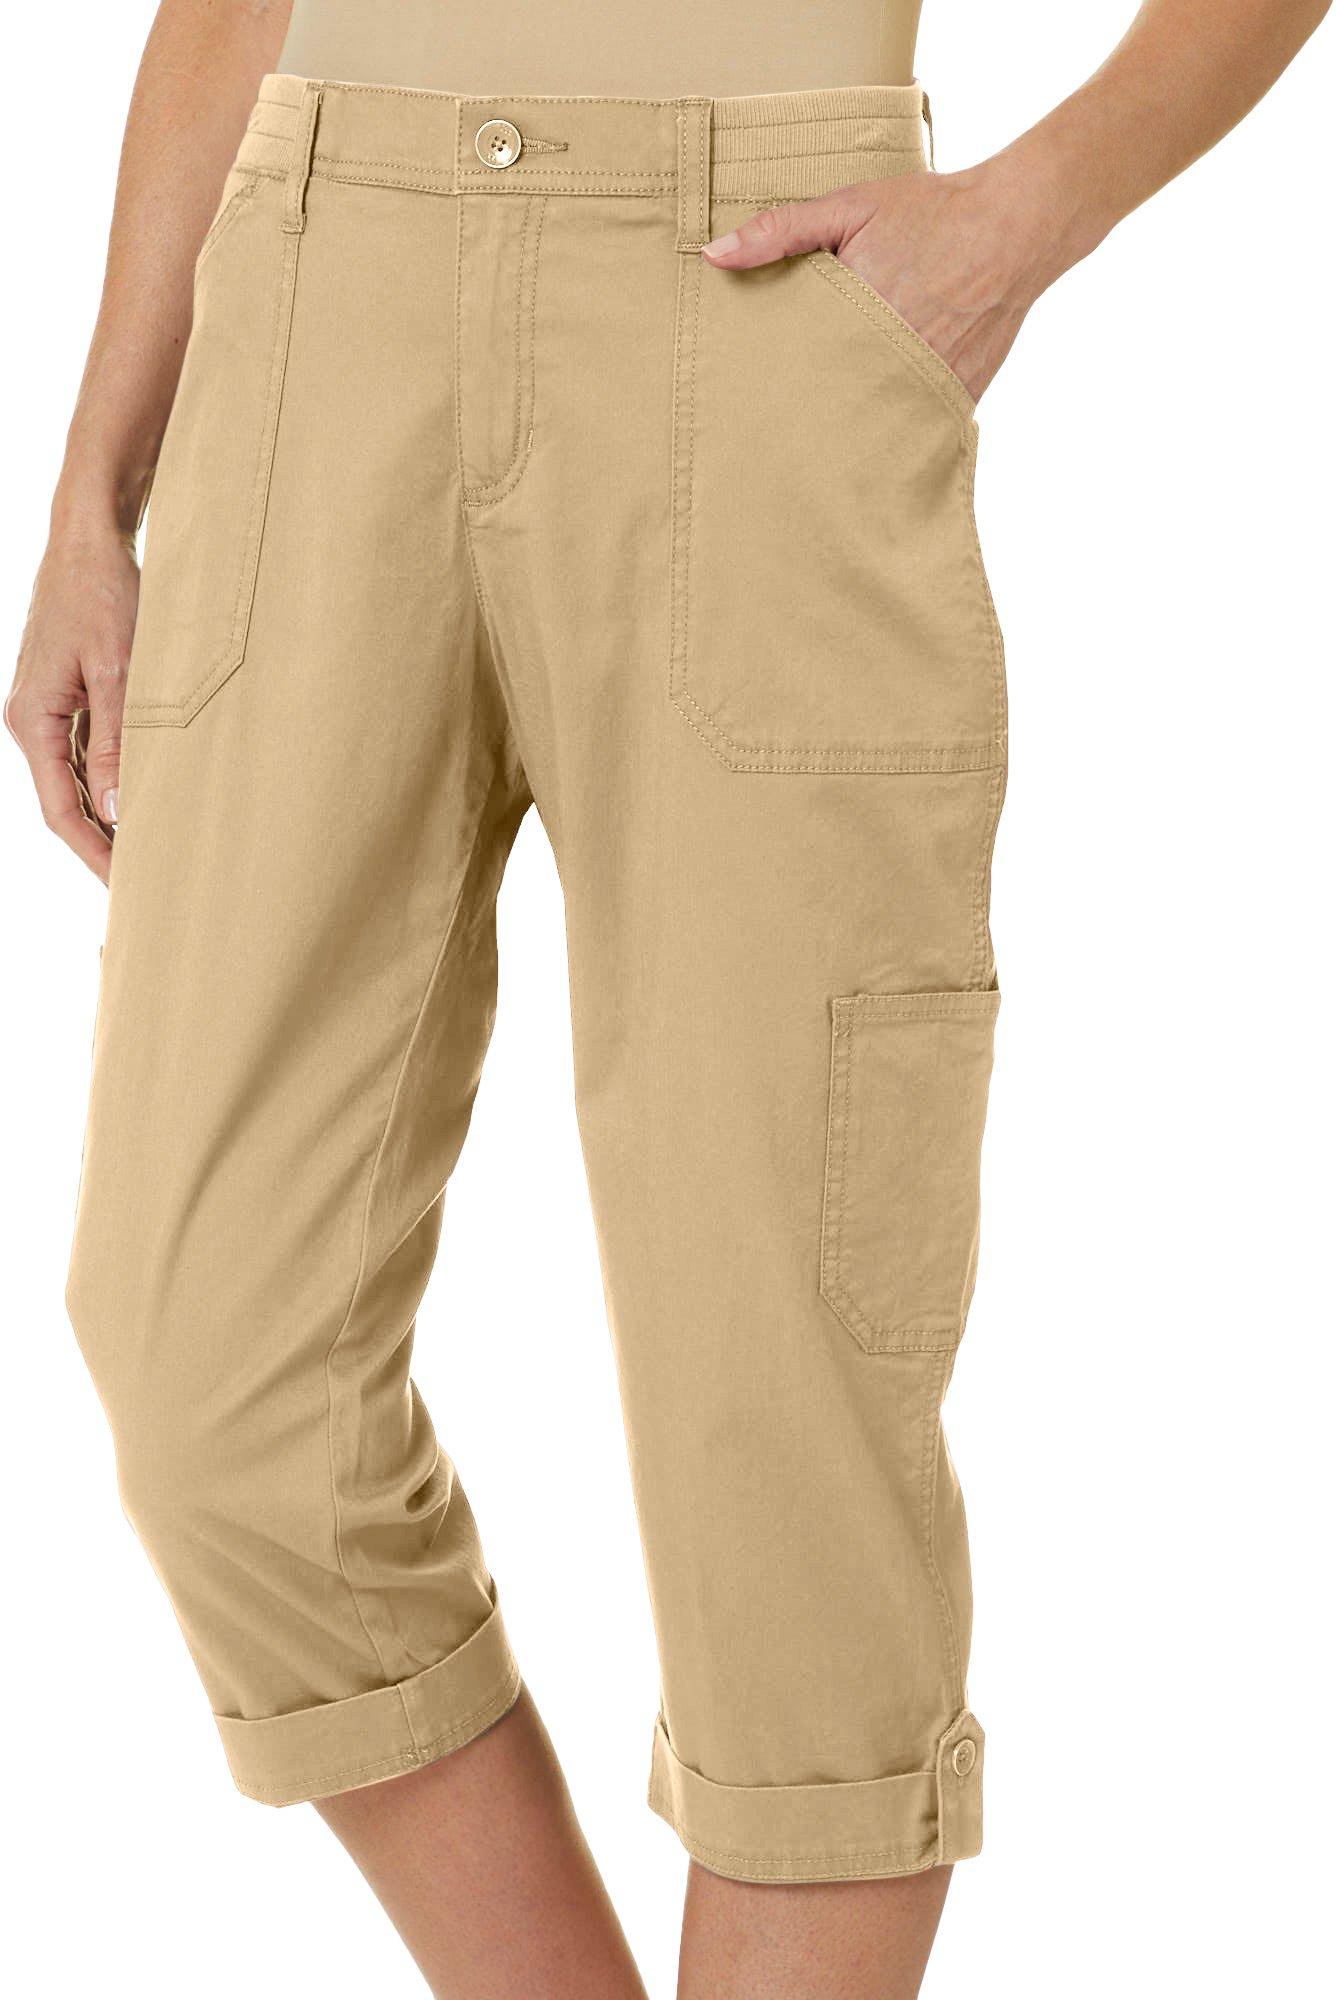 lee comfort waistband cargo pants